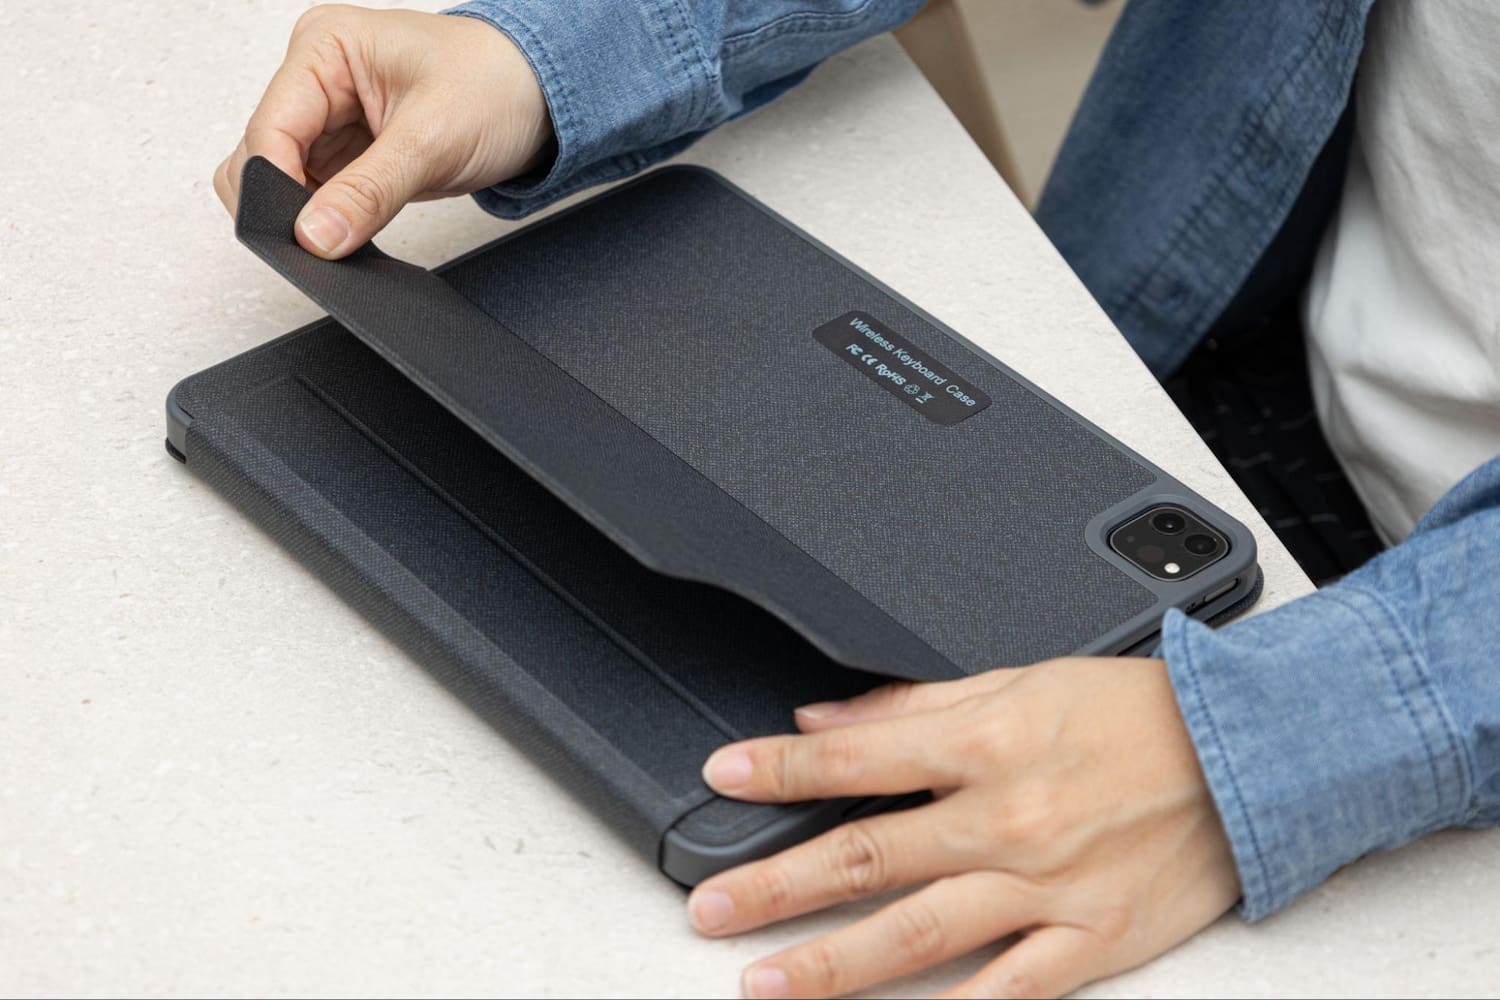 eiP Magnetix 磁吸可拆式藍芽鍵盤開箱評測：360度防護、多角度支架14